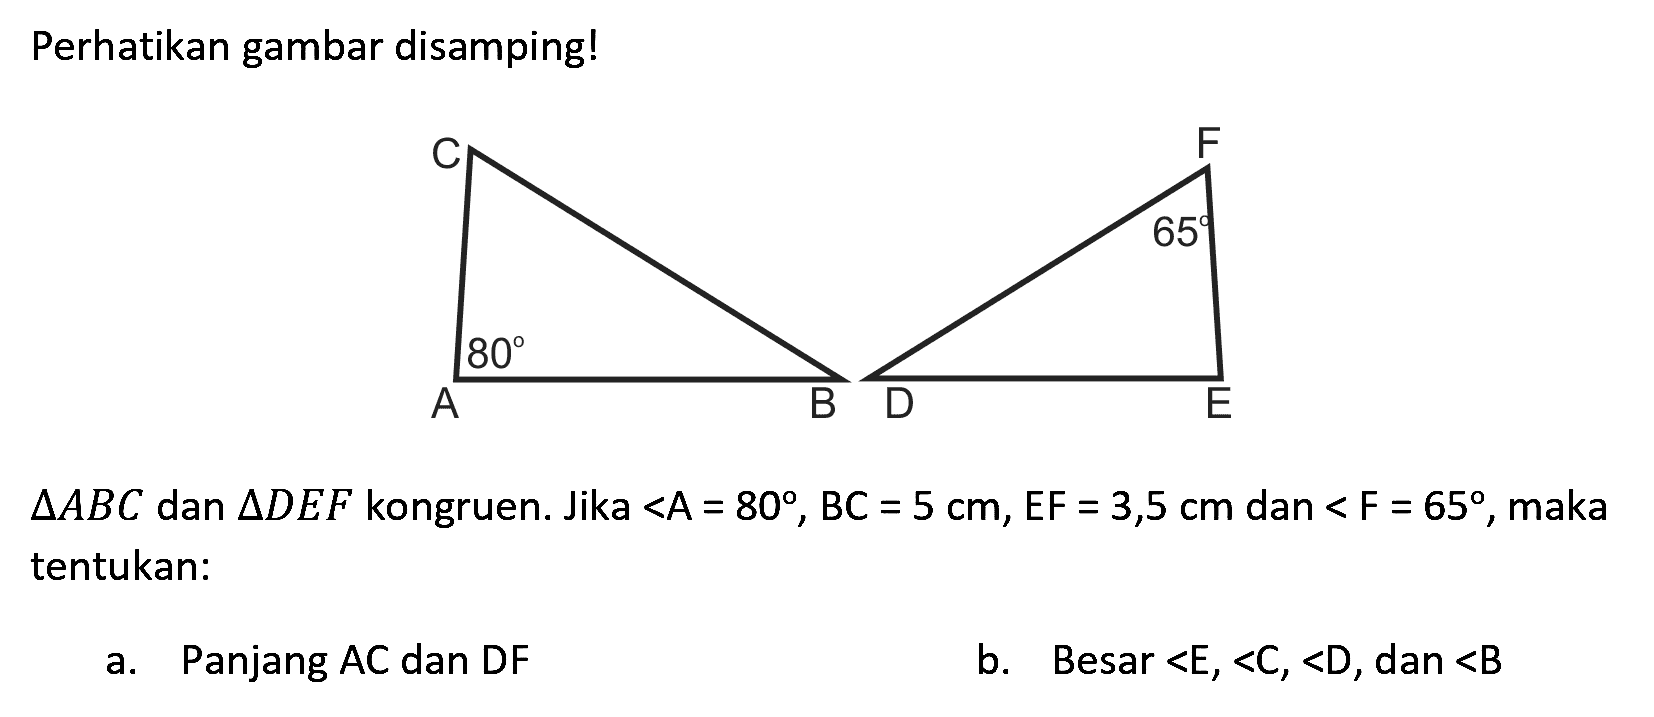 Perhatikan gambar disamping!
C 80 A B
F 65 D E
segitiga A B C  dan  segitiga D E F  kongruen. Jika <A=80, BC=5 cm, EF=3,5 cm  dan  <F=65 , maka tentukan:
a. Panjang AC dan DF
b. Besar  <E,<C,<D , dan  <B 